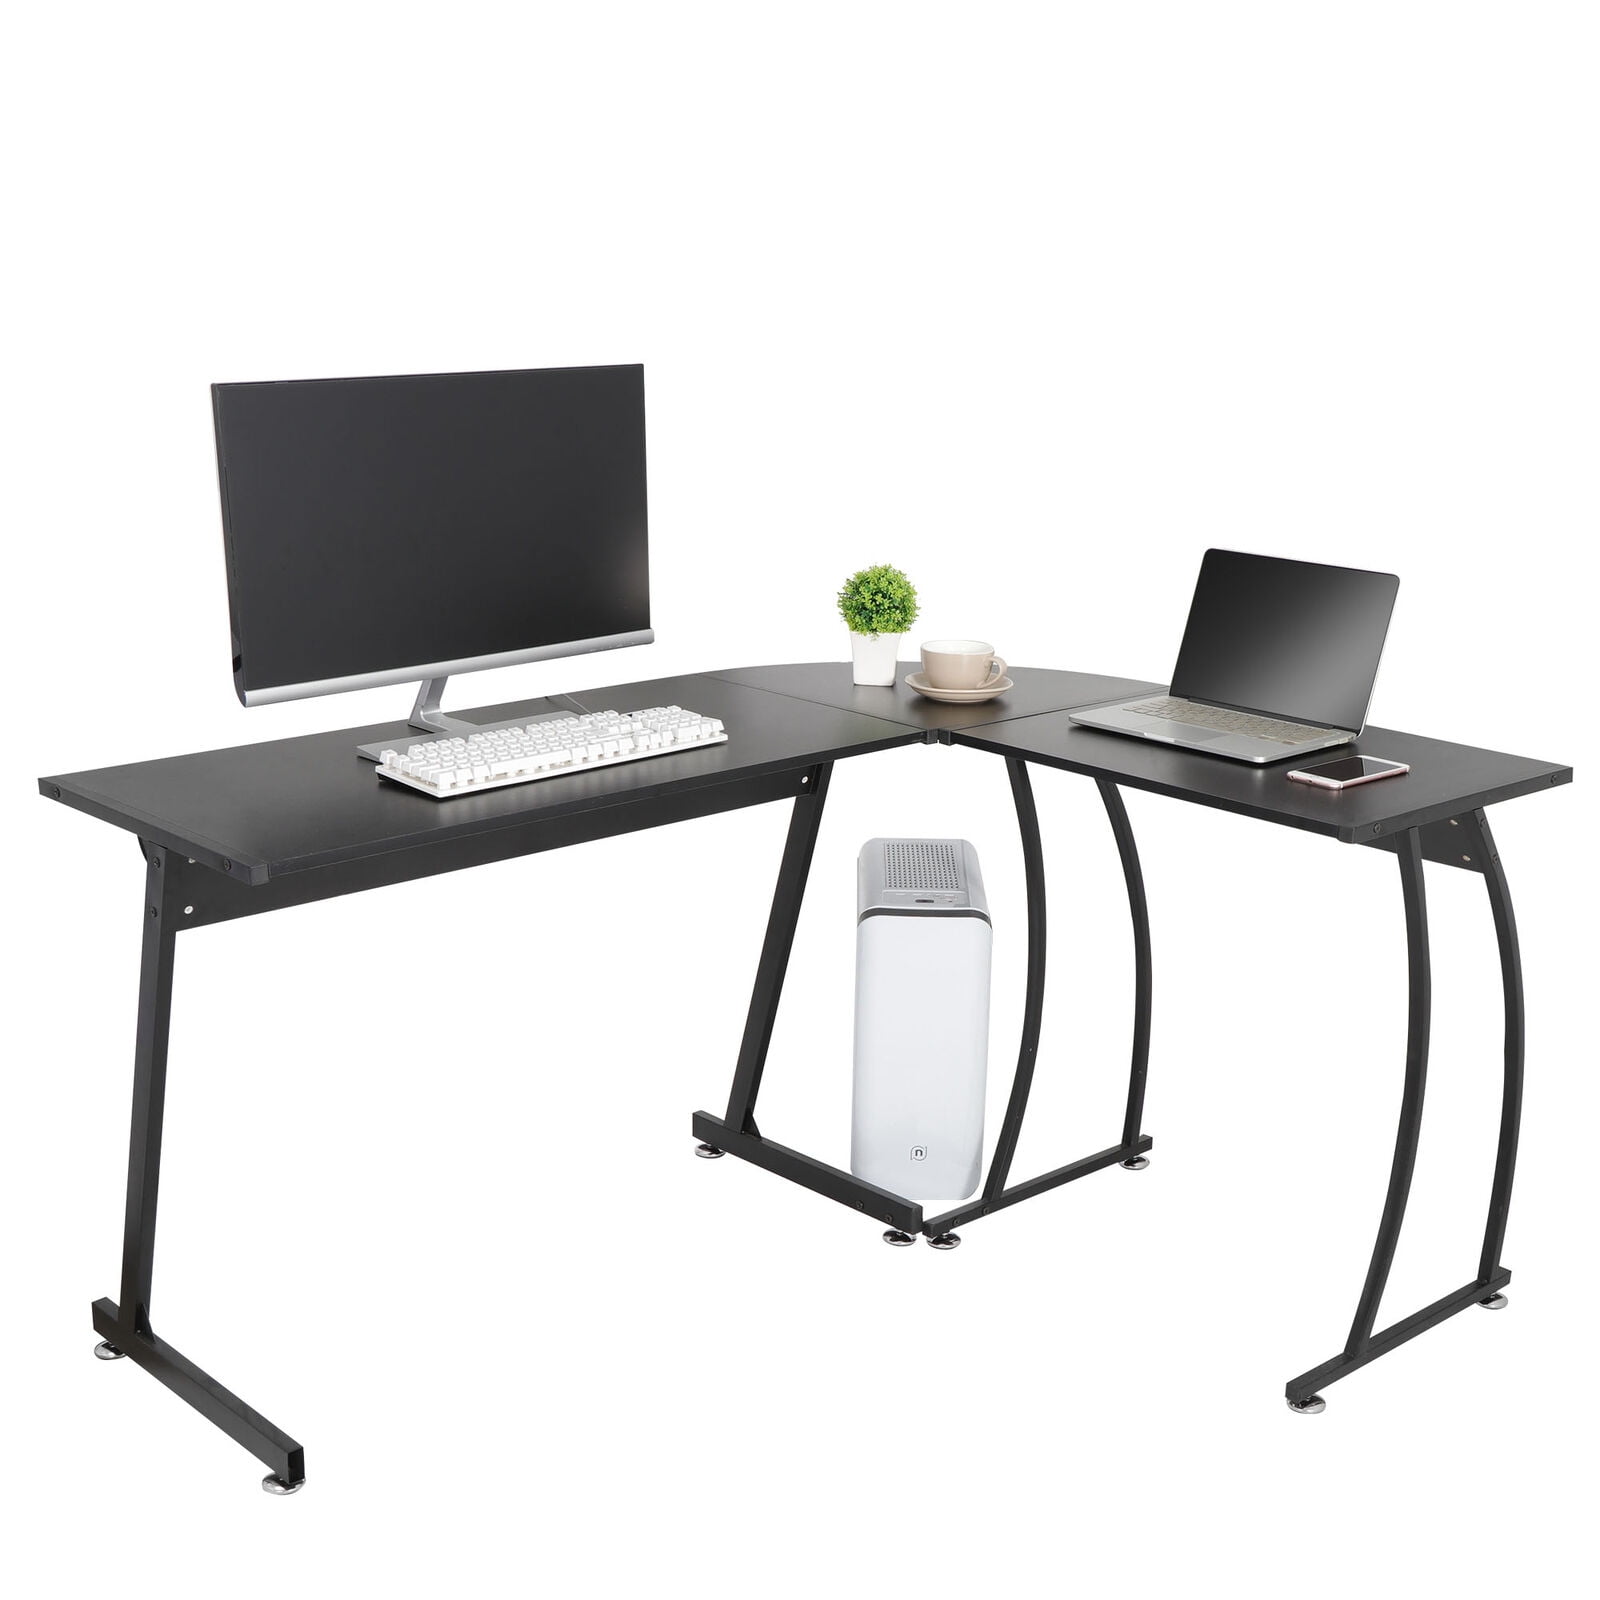 Zenstyle L Shaped Desk Corner Computer Gaming Laptop Table Workstation Home Office Desk Walmart Com Walmart Com